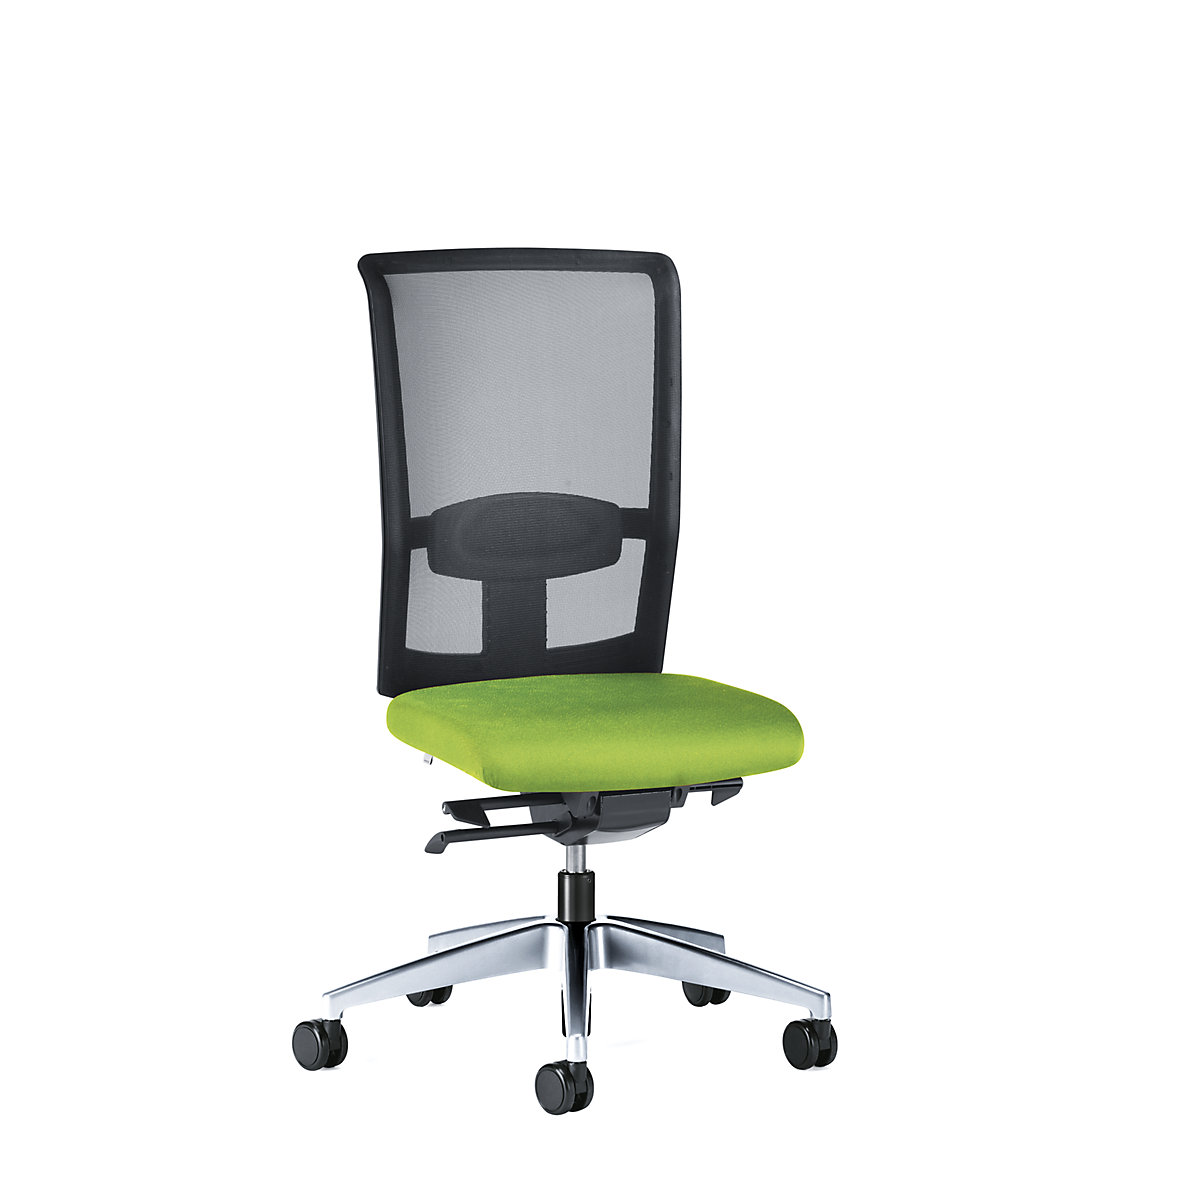 GOAL AIR office swivel chair, back rest height 545 mm – interstuhl